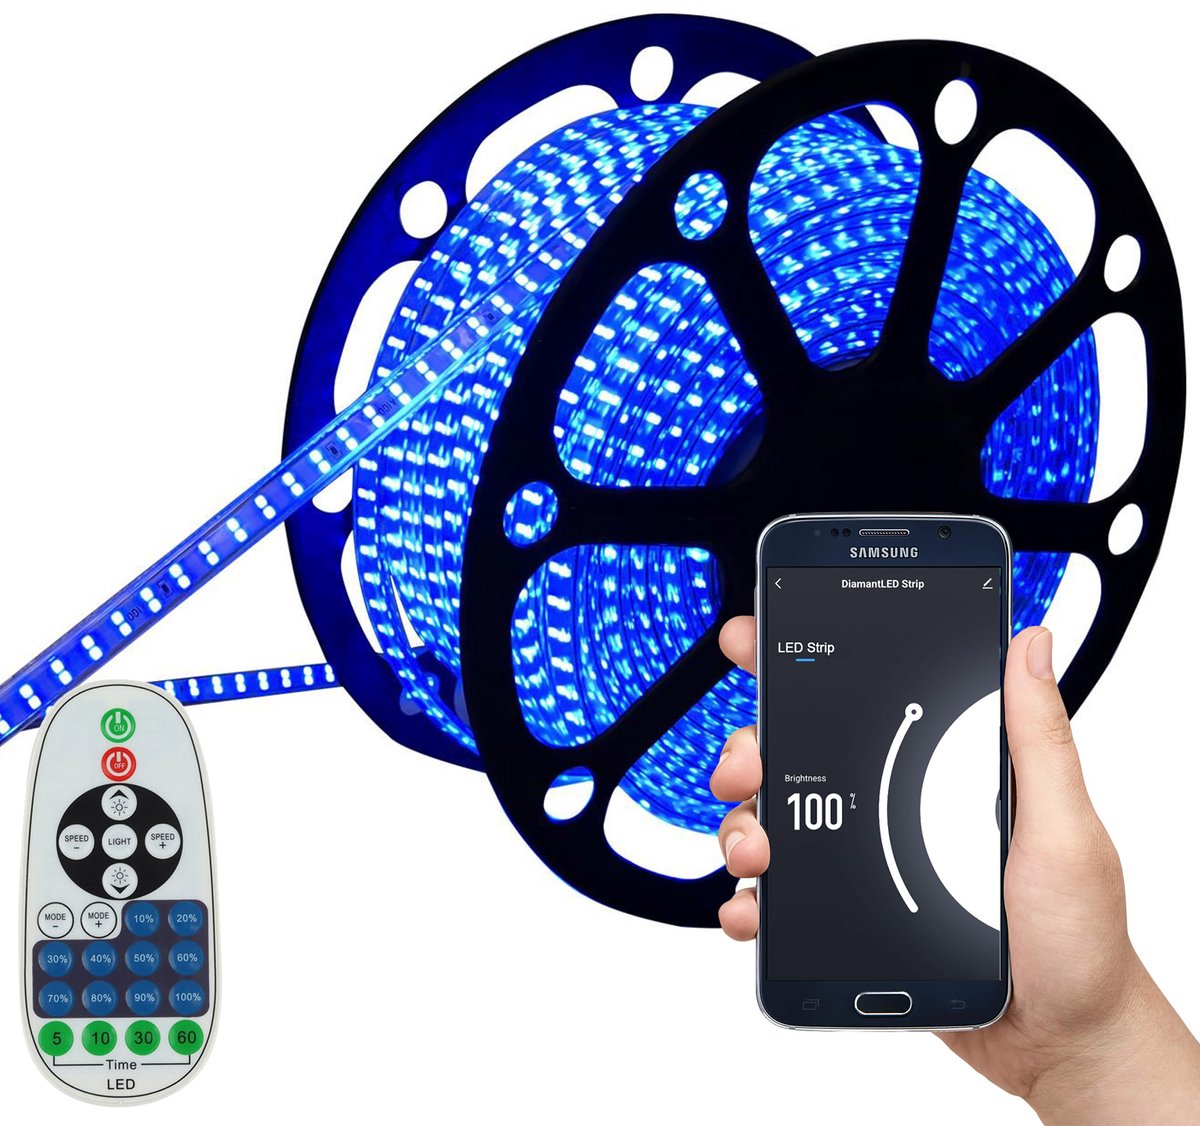 LED Strip Blauw - 40 Meter aan één stuk - 180 LED's per meter - Met Wi-Fi App + IR 23 knops afstandsbediening - Smarthome - Google Home/Amazon Alexa - Waterdicht - Makkelijke mobiele App voor bedienen inclusief afstandsbediening - iOS en Android